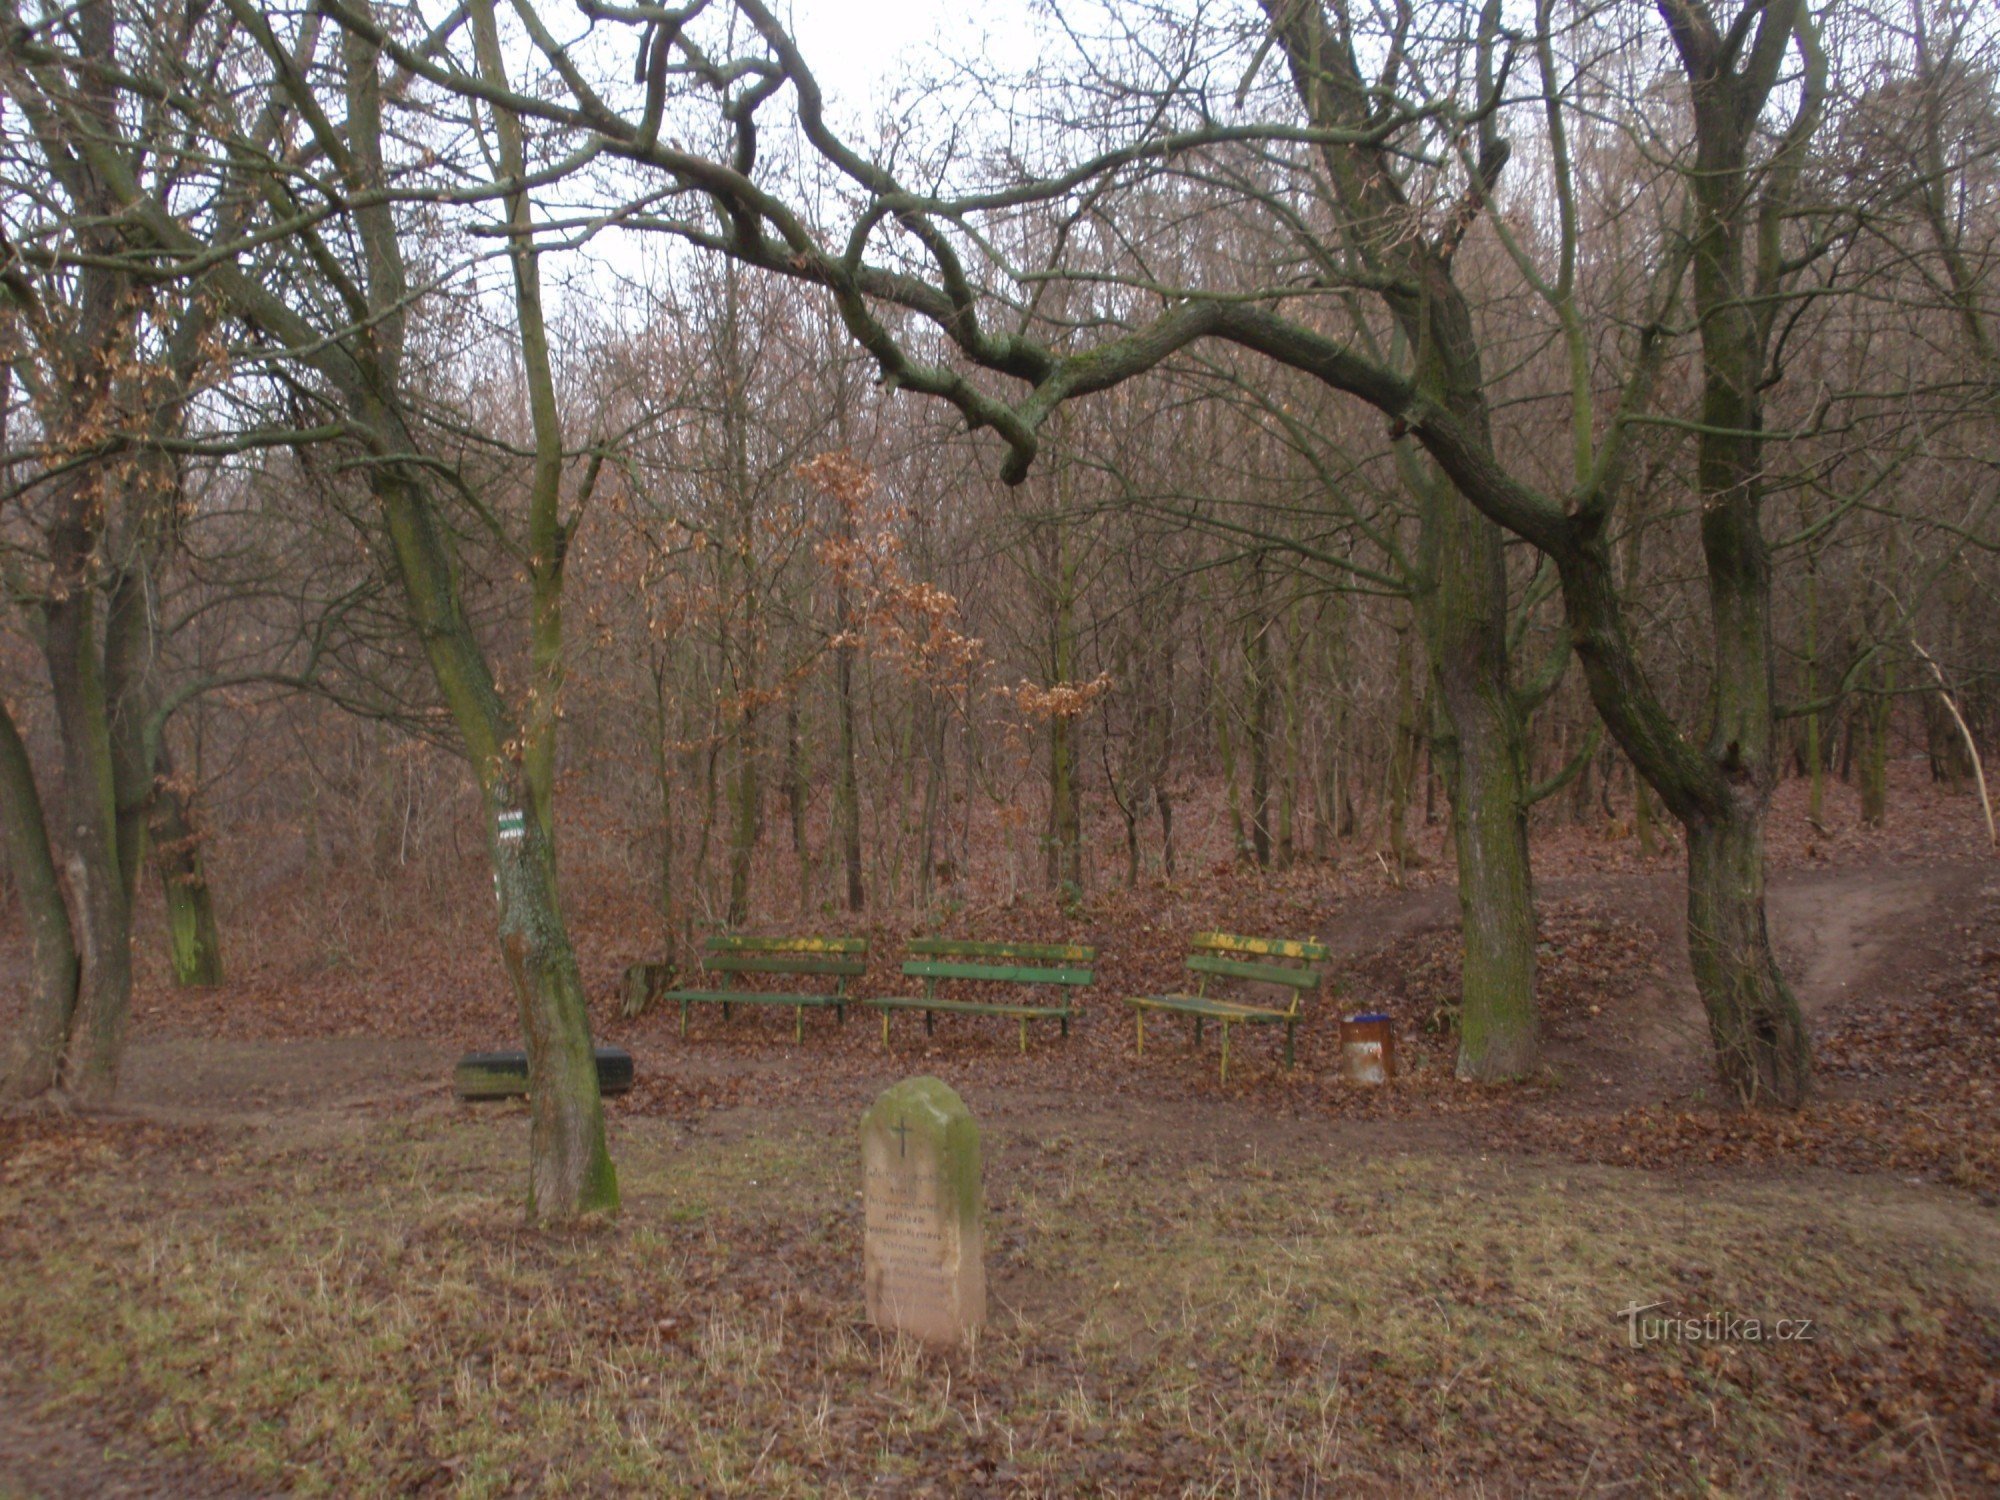 Đài tưởng niệm một vụ giết người cổ đại gần Padochov